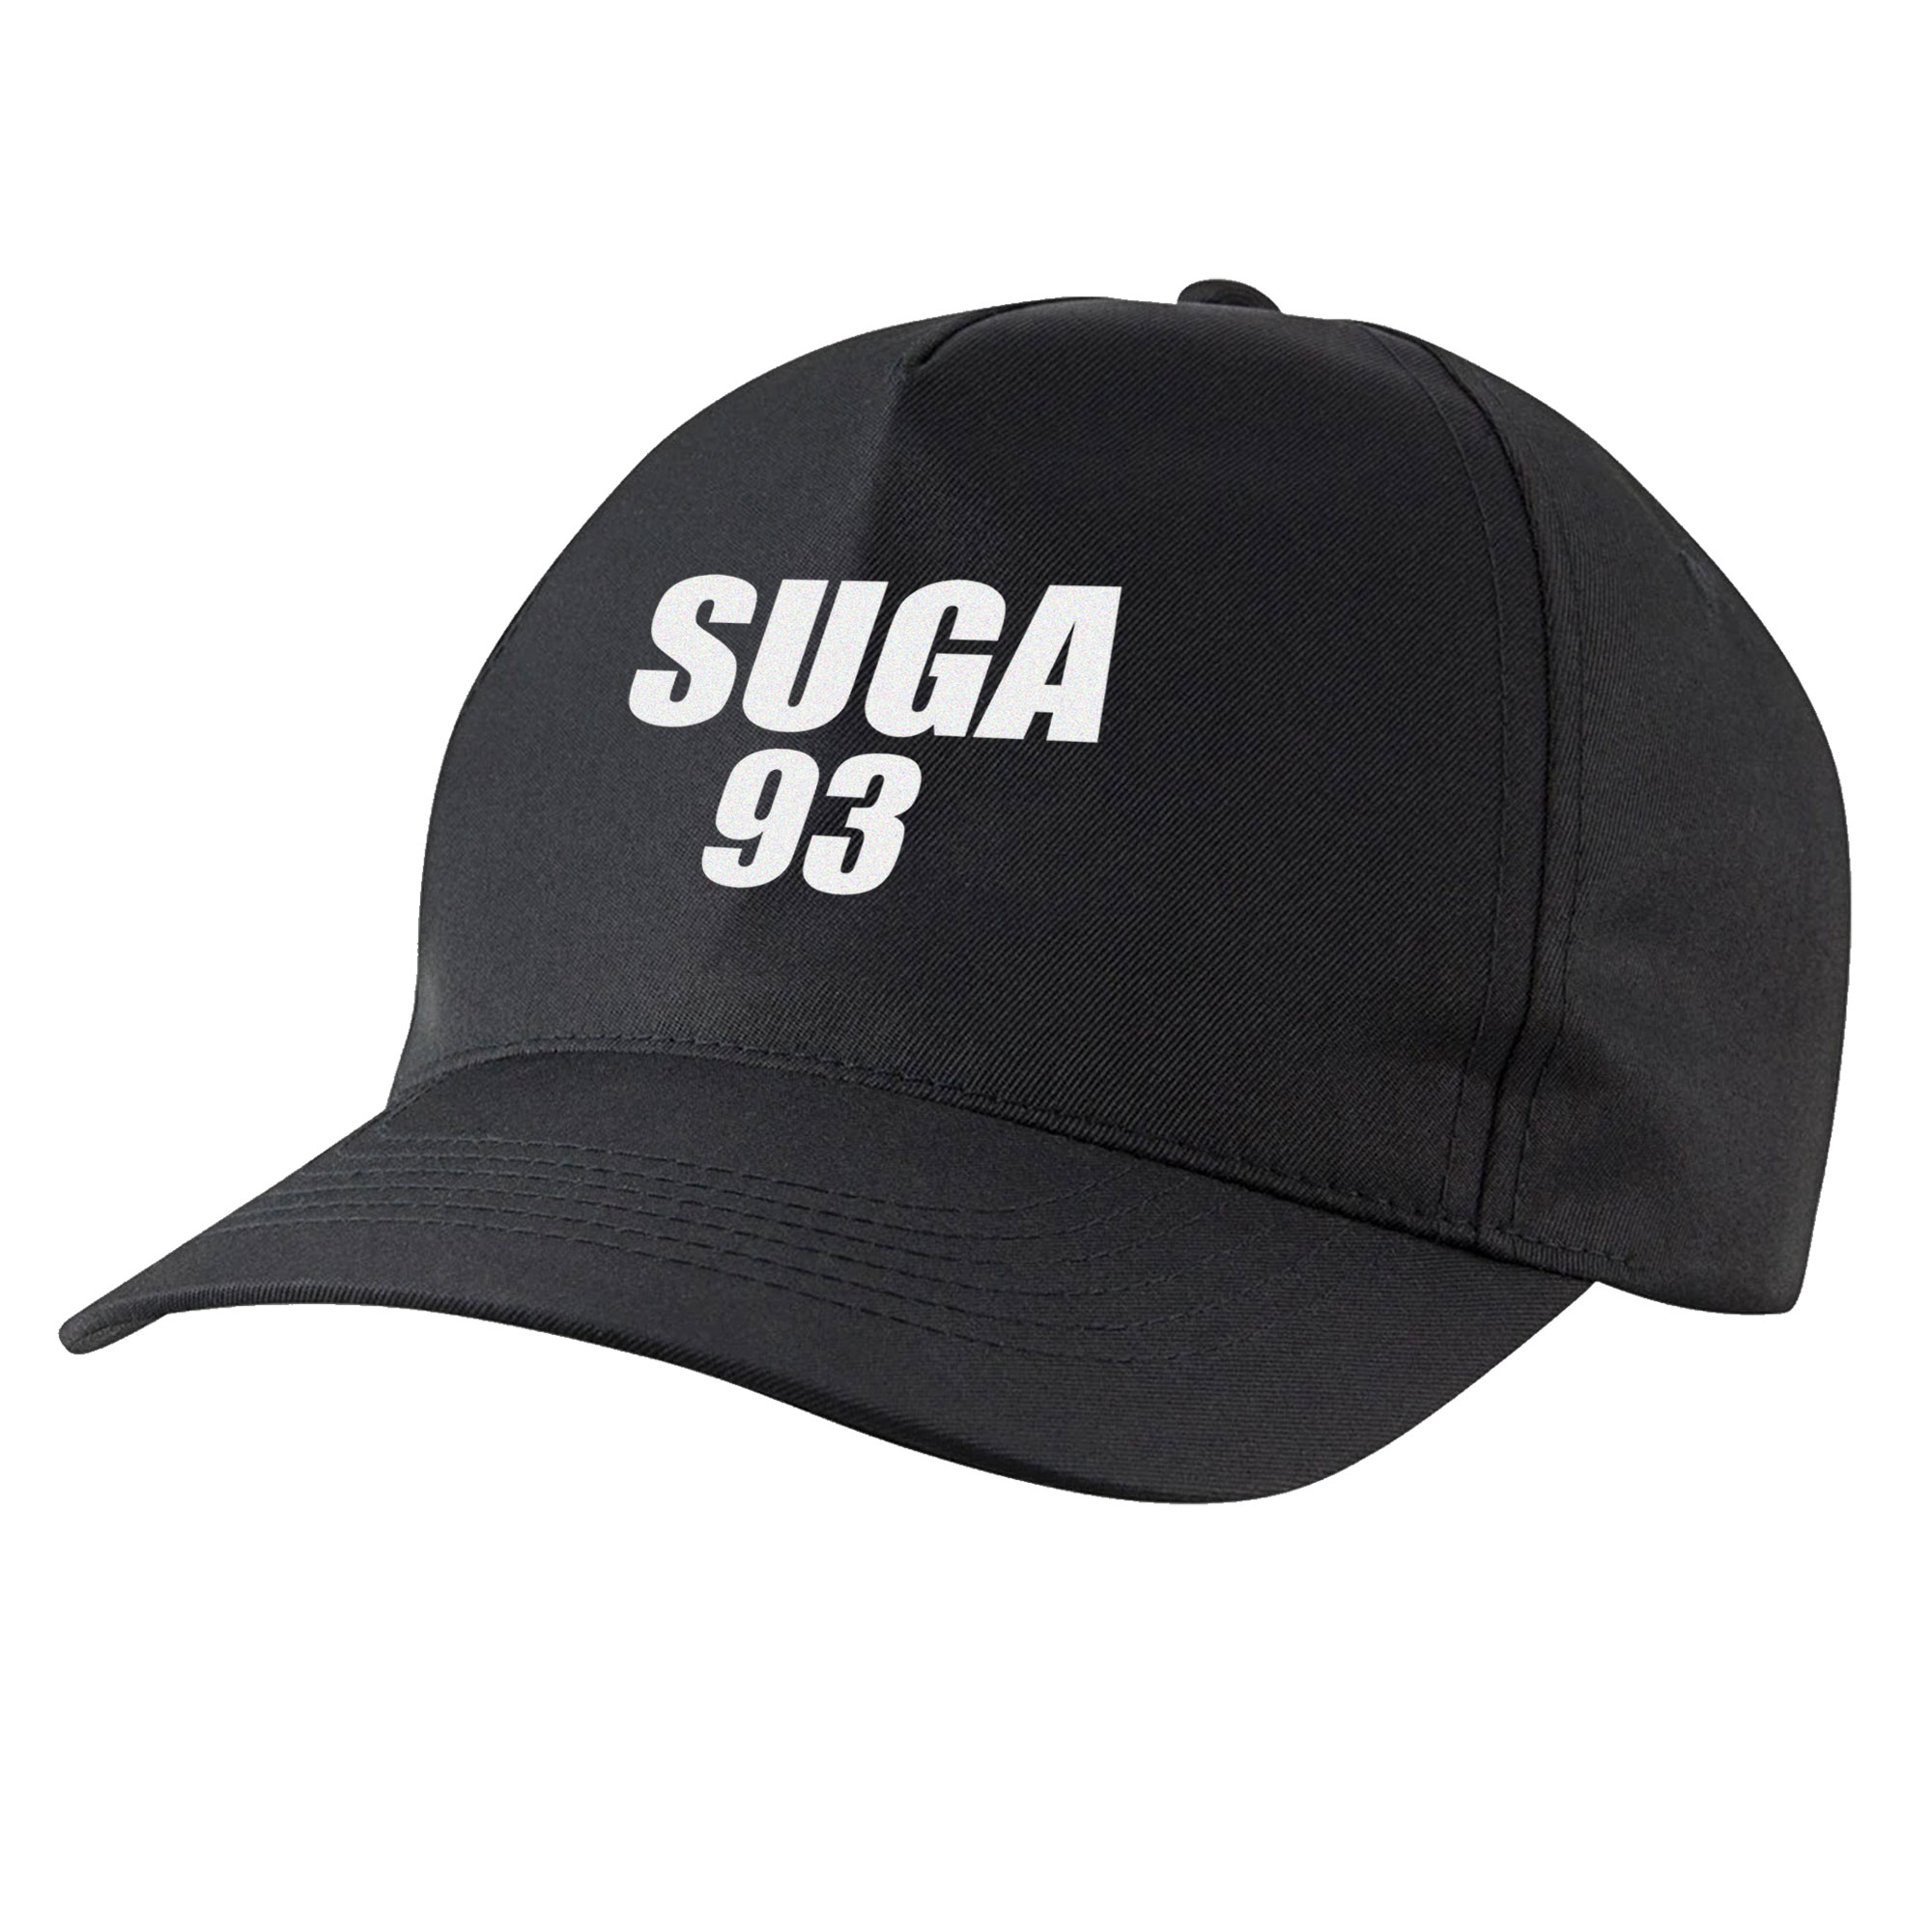 نکته خرید - قیمت روز کلاه کپ مدل گروه bts شوگا کد bbsuga خرید